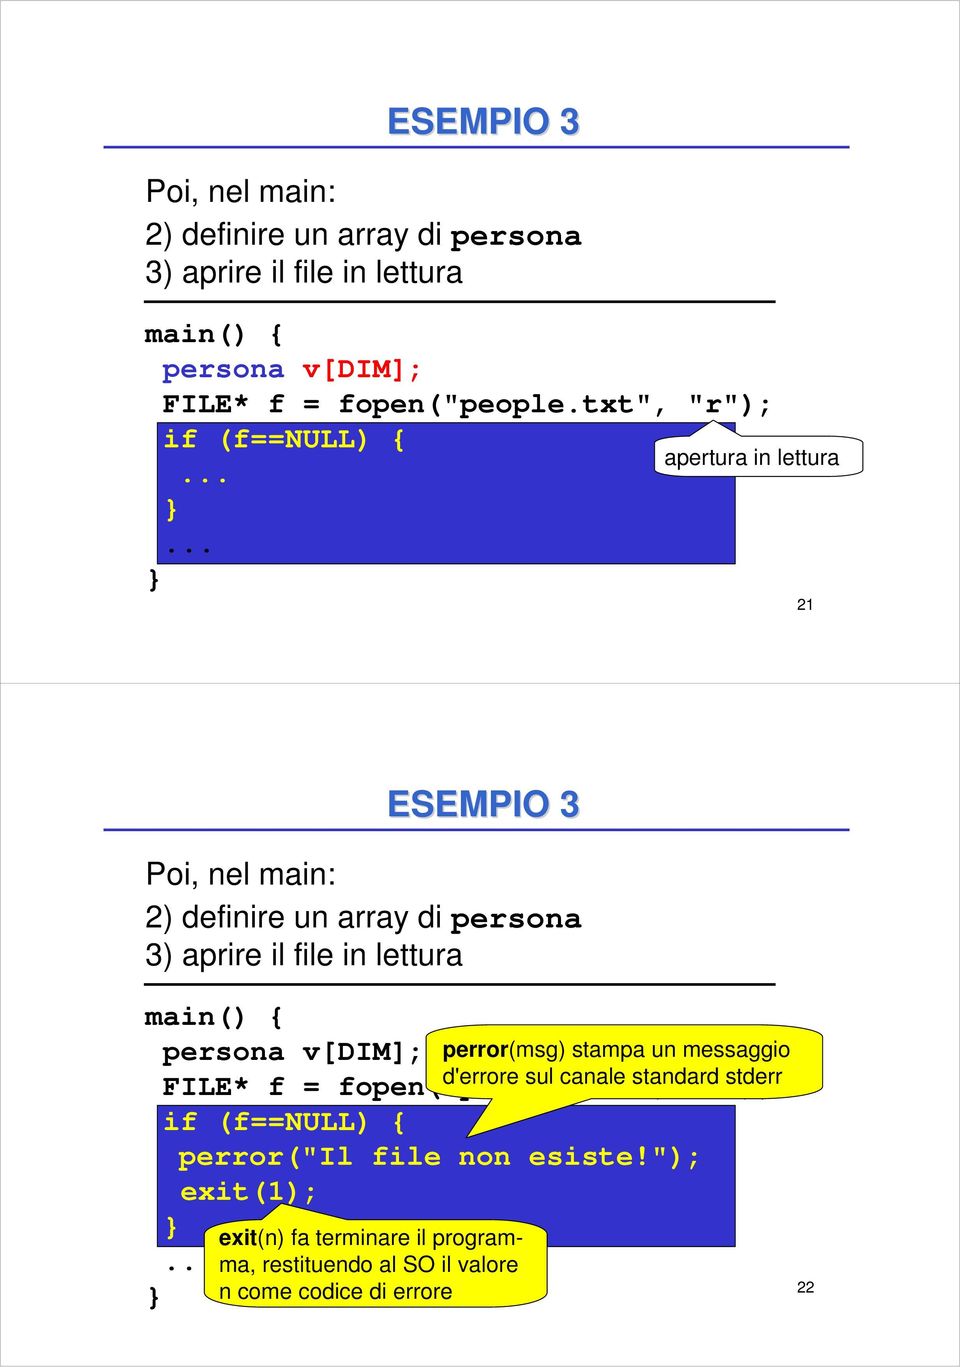 "); exit(1); exit(n) fa terminare il programma, restituendo al SO il valore.